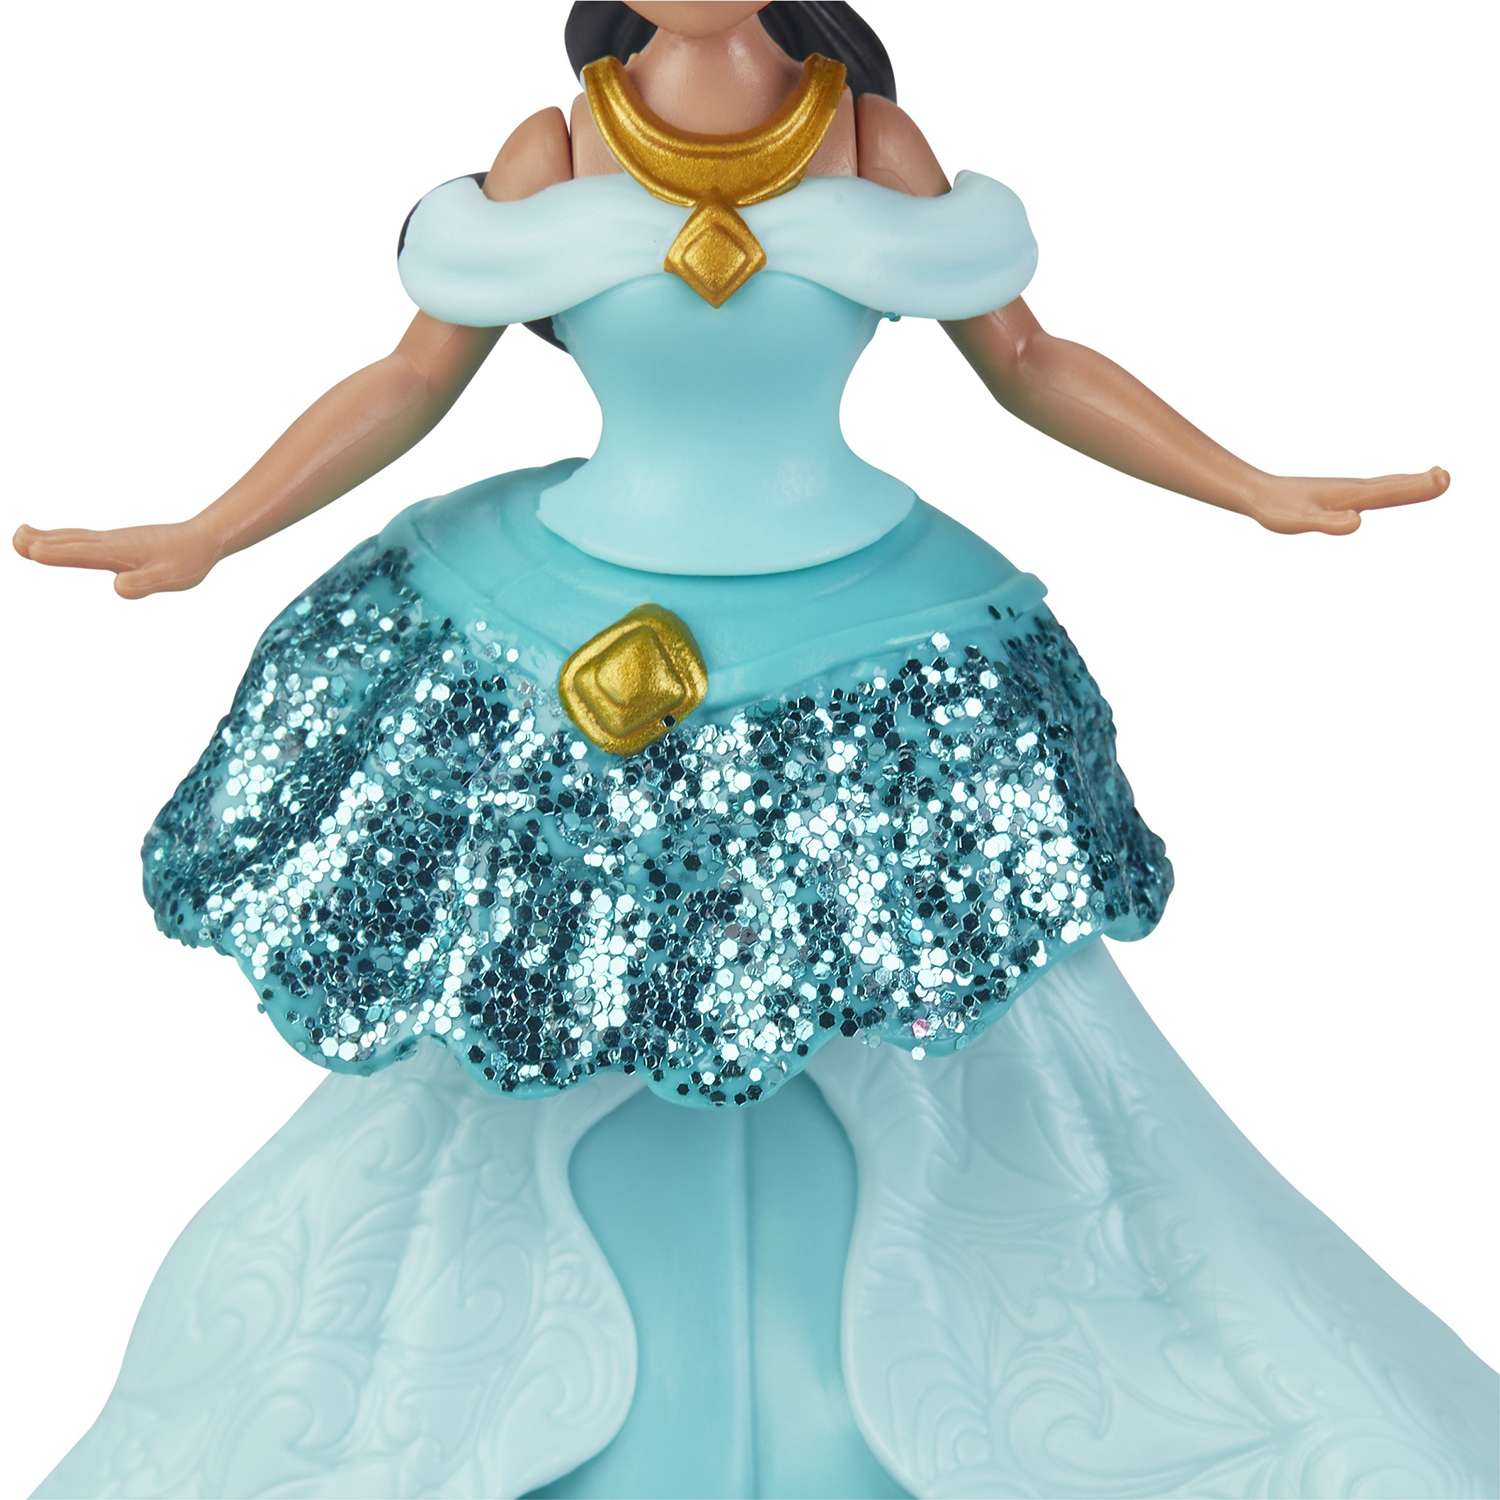 Фигурка Disney Princess Hasbro Принцессы Жасмин E3089EU4 E3049EU4 - фото 7